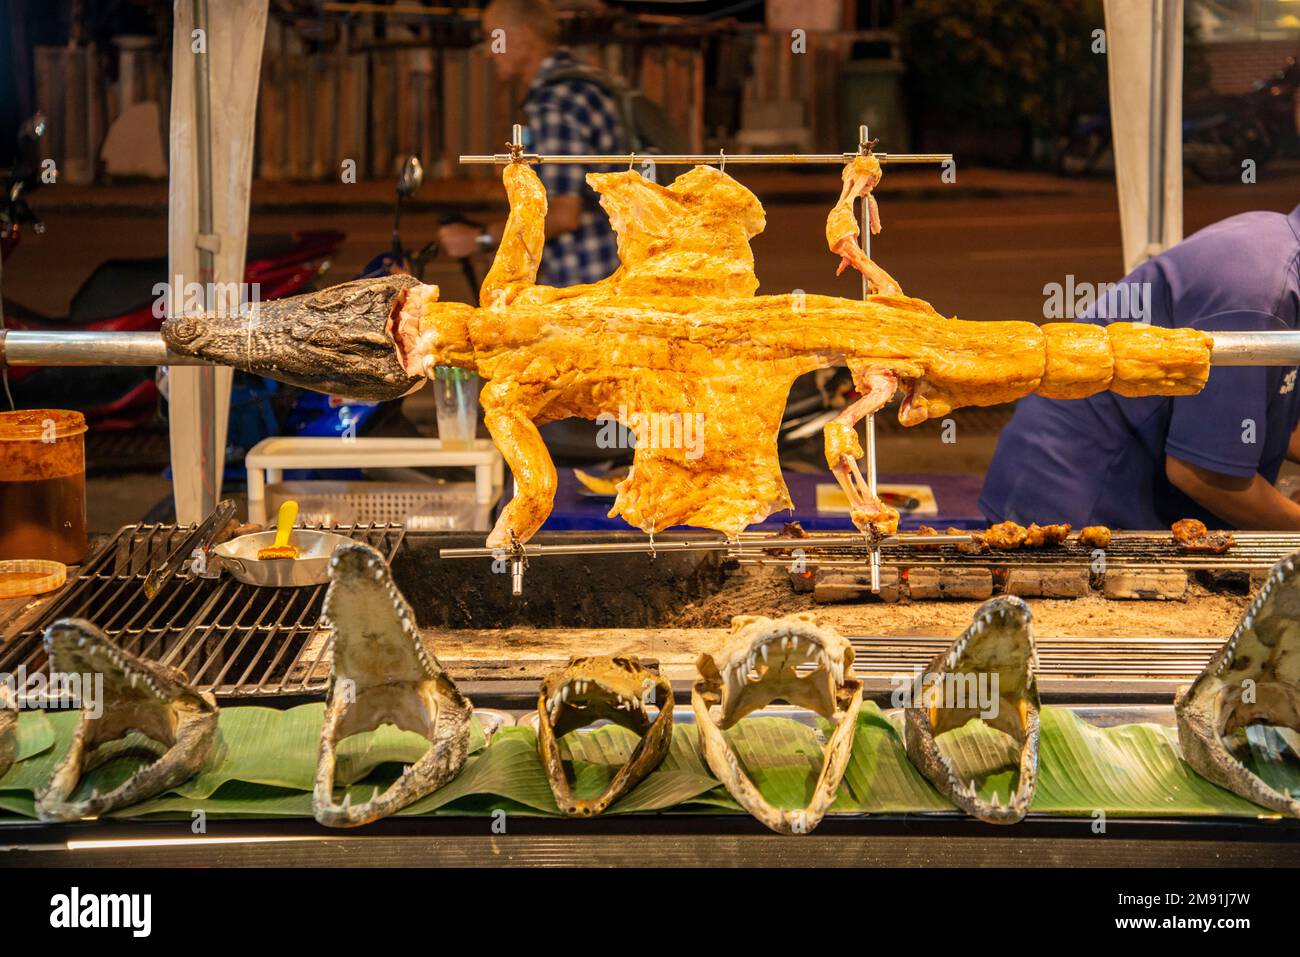 Carne di coccodrillo e grigliata al mercato notturno di Runway Street Food nella città di Pattaya nella provincia di Chonburi in Thailandia, Thailandia, Pattaya, novembre Foto Stock